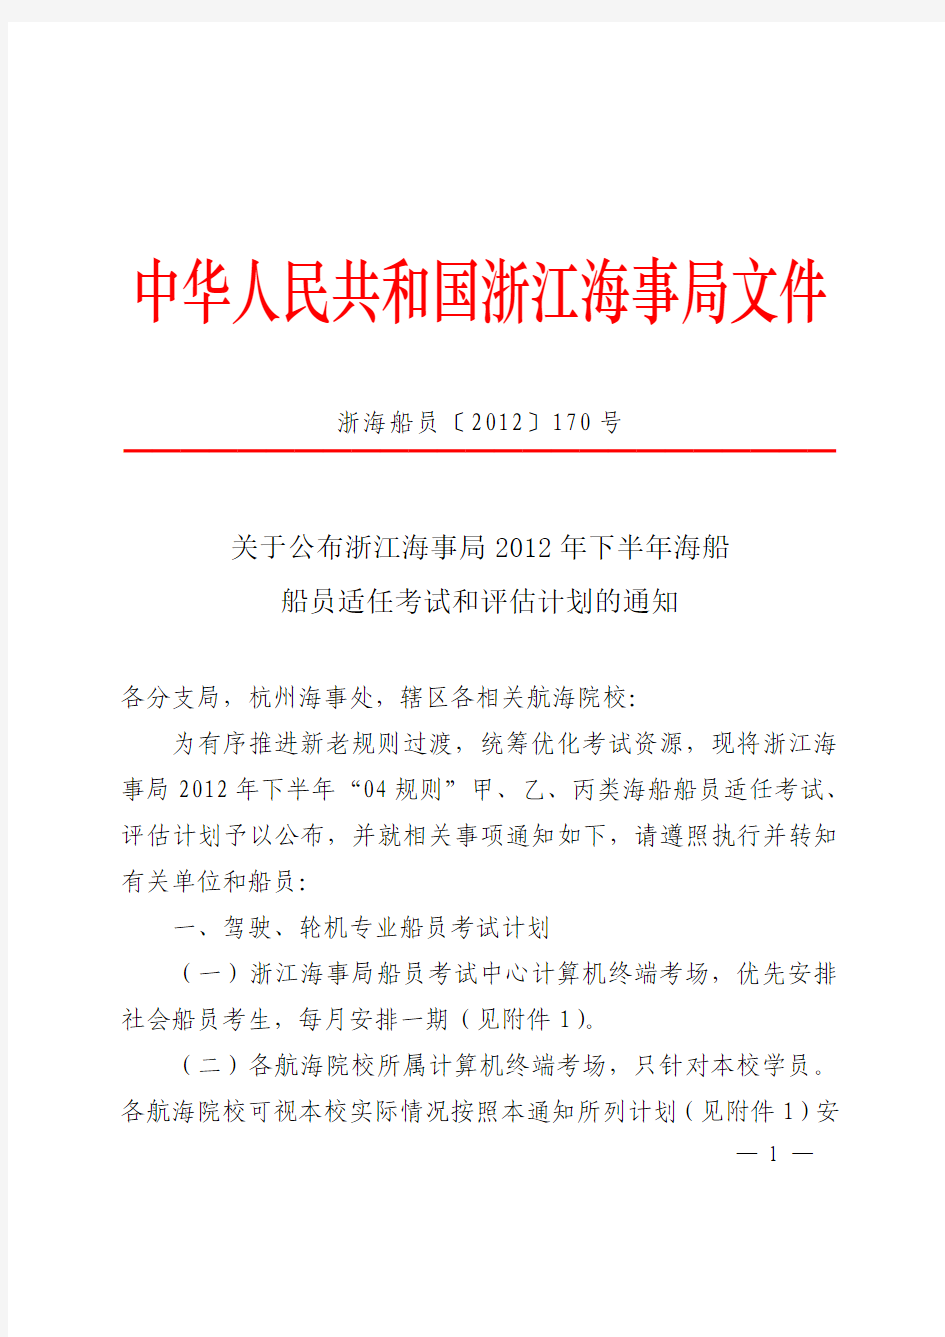 关于公布浙江海事局2012年下半年海船船员适任考试和评估计划的通知